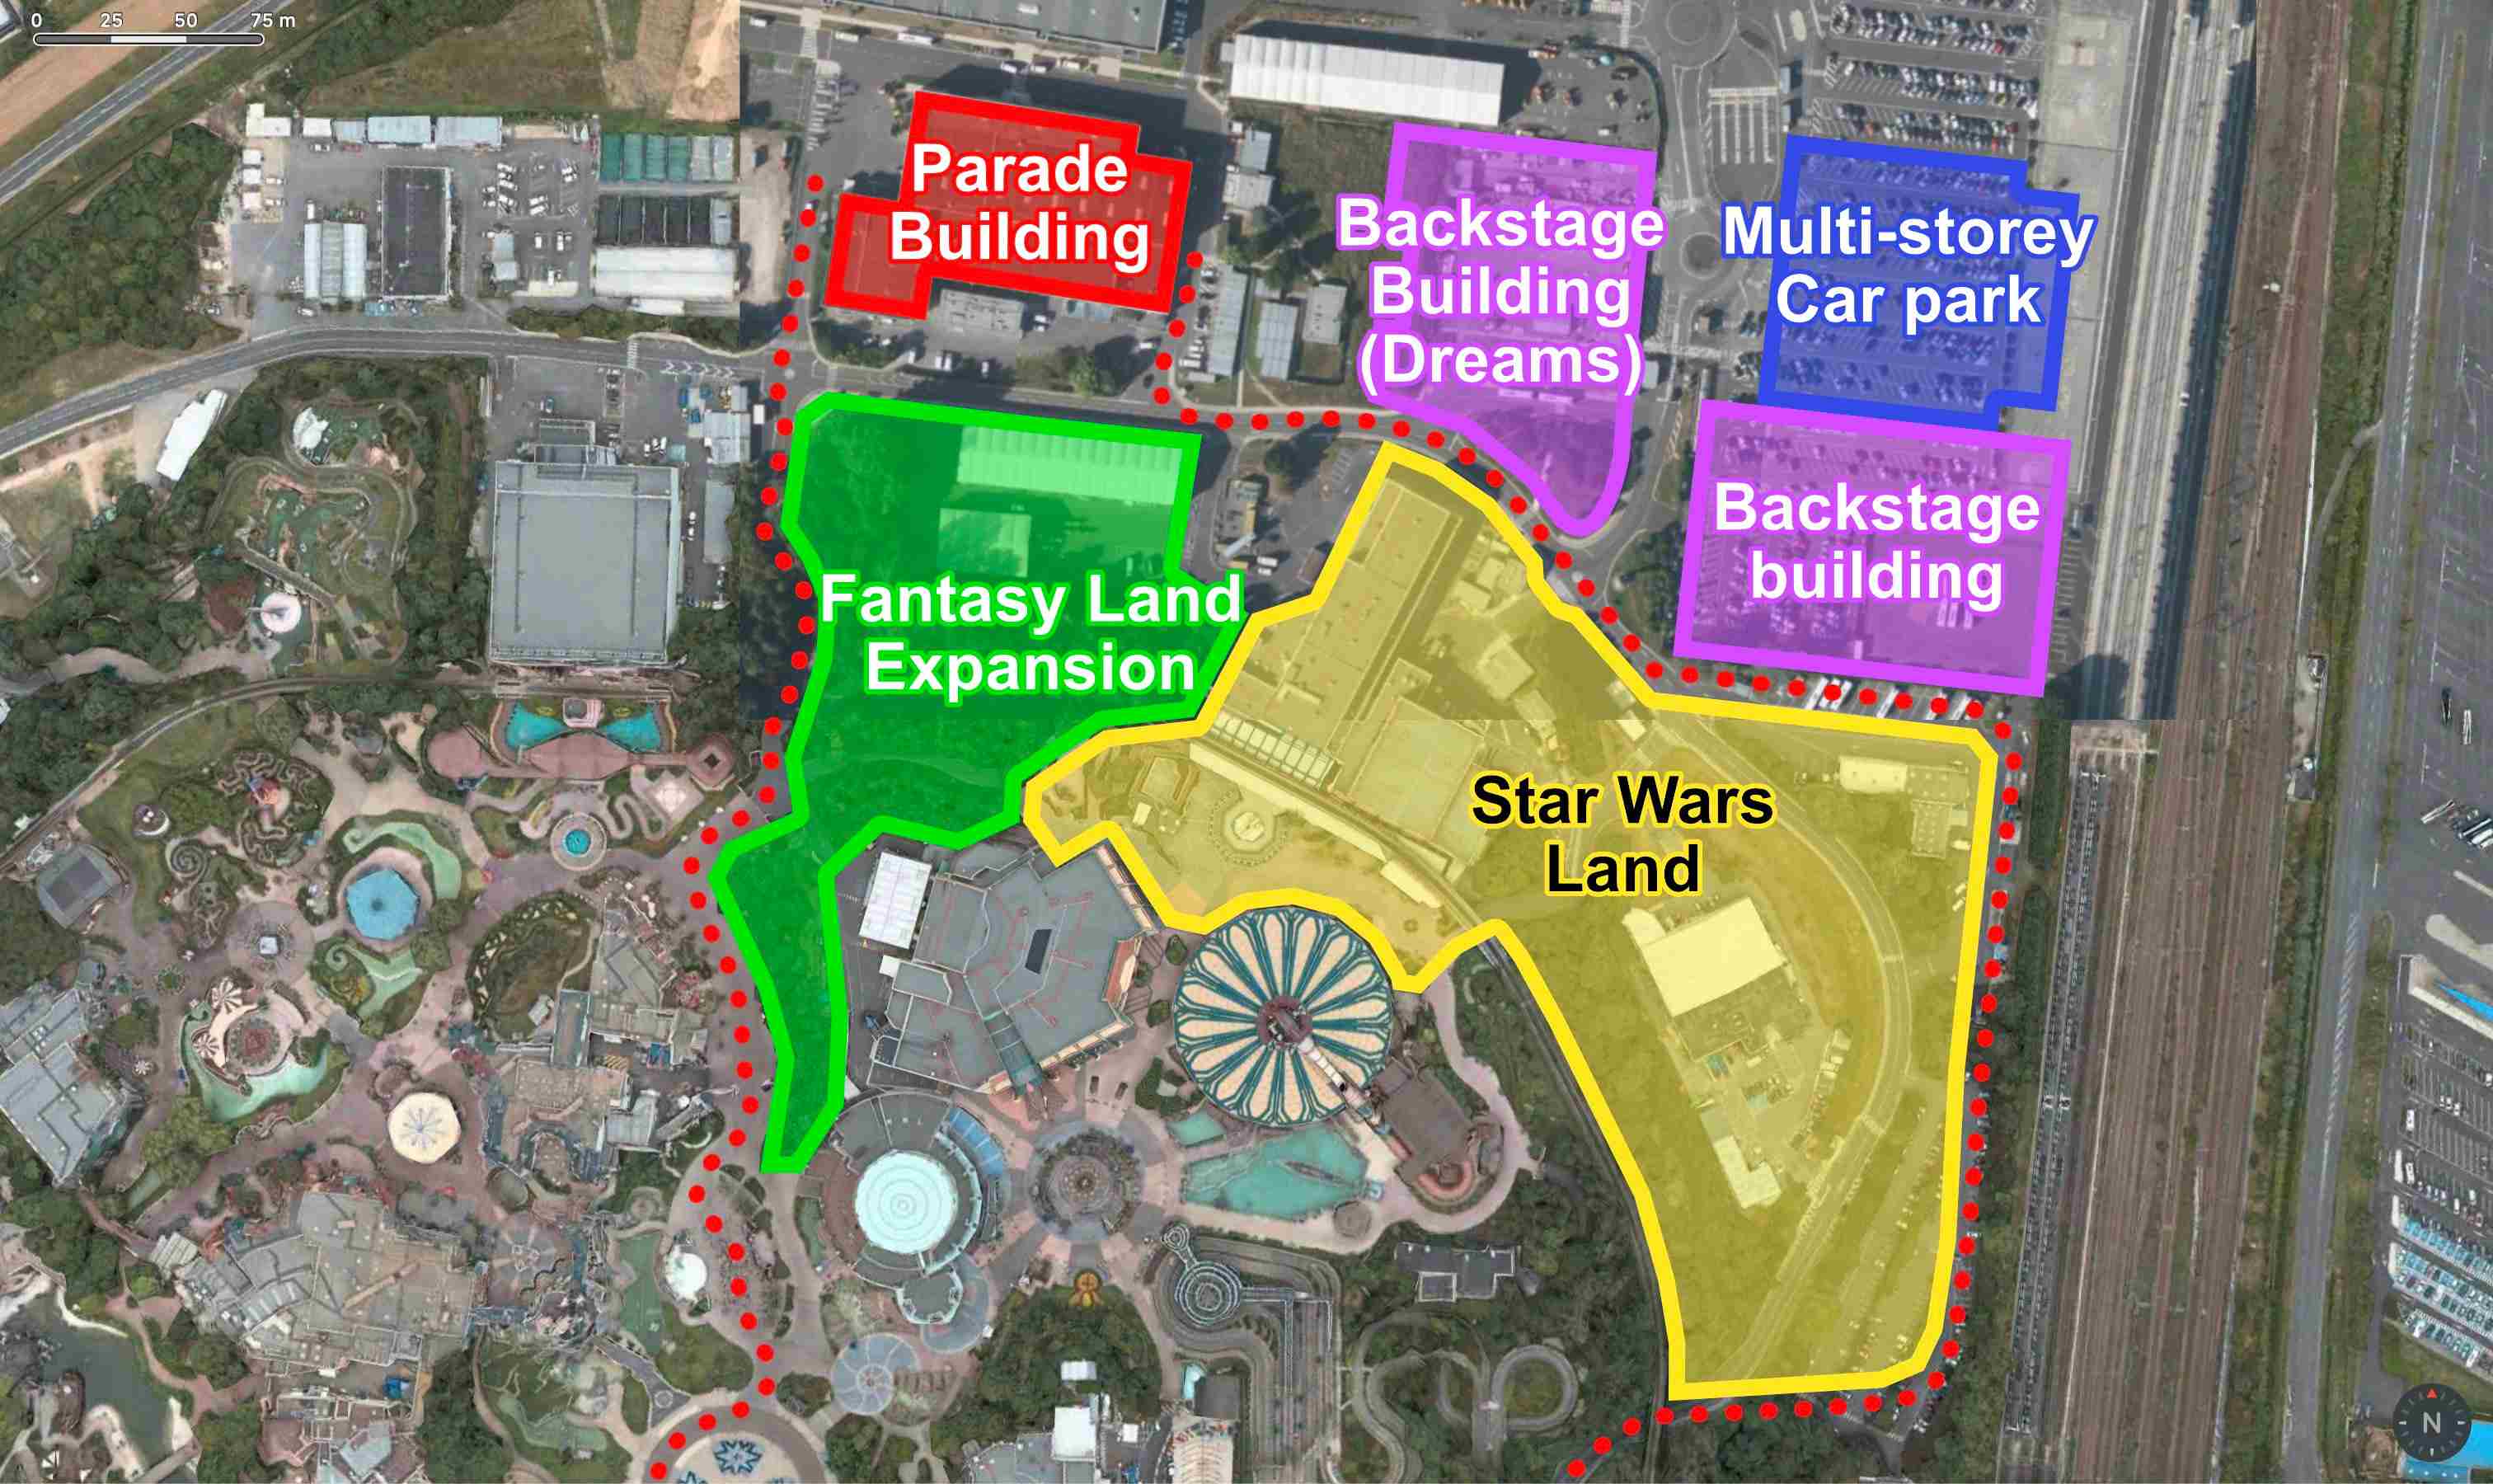 Schéma du projet d'agrandissement du parc, avec une zone entière dédiée à Star Wars